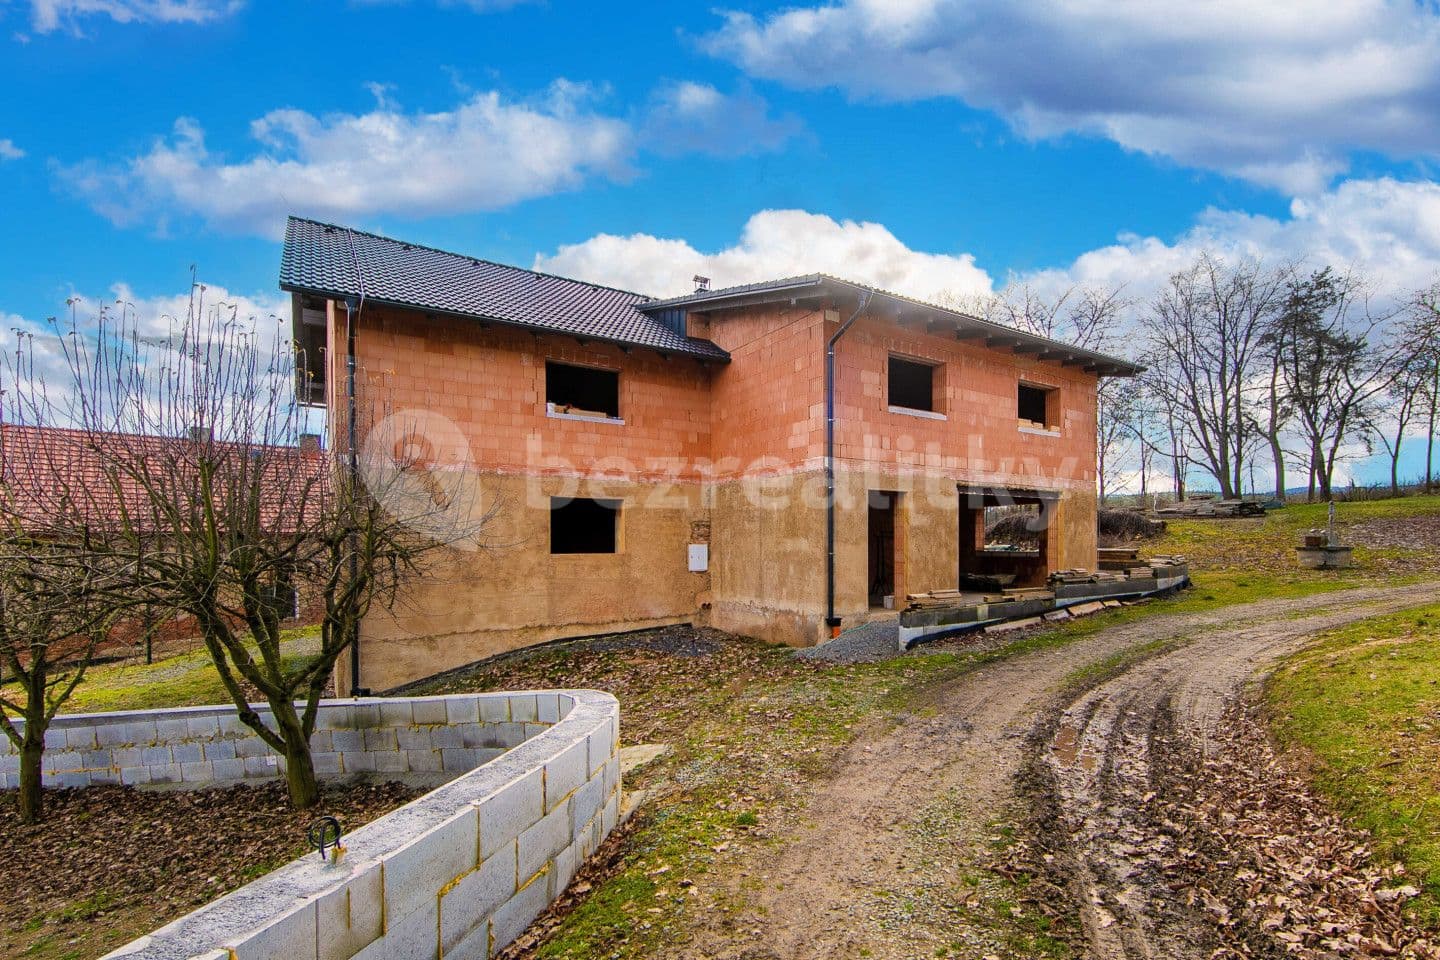 house for sale, 294 m², Otov, Plzeňský Region